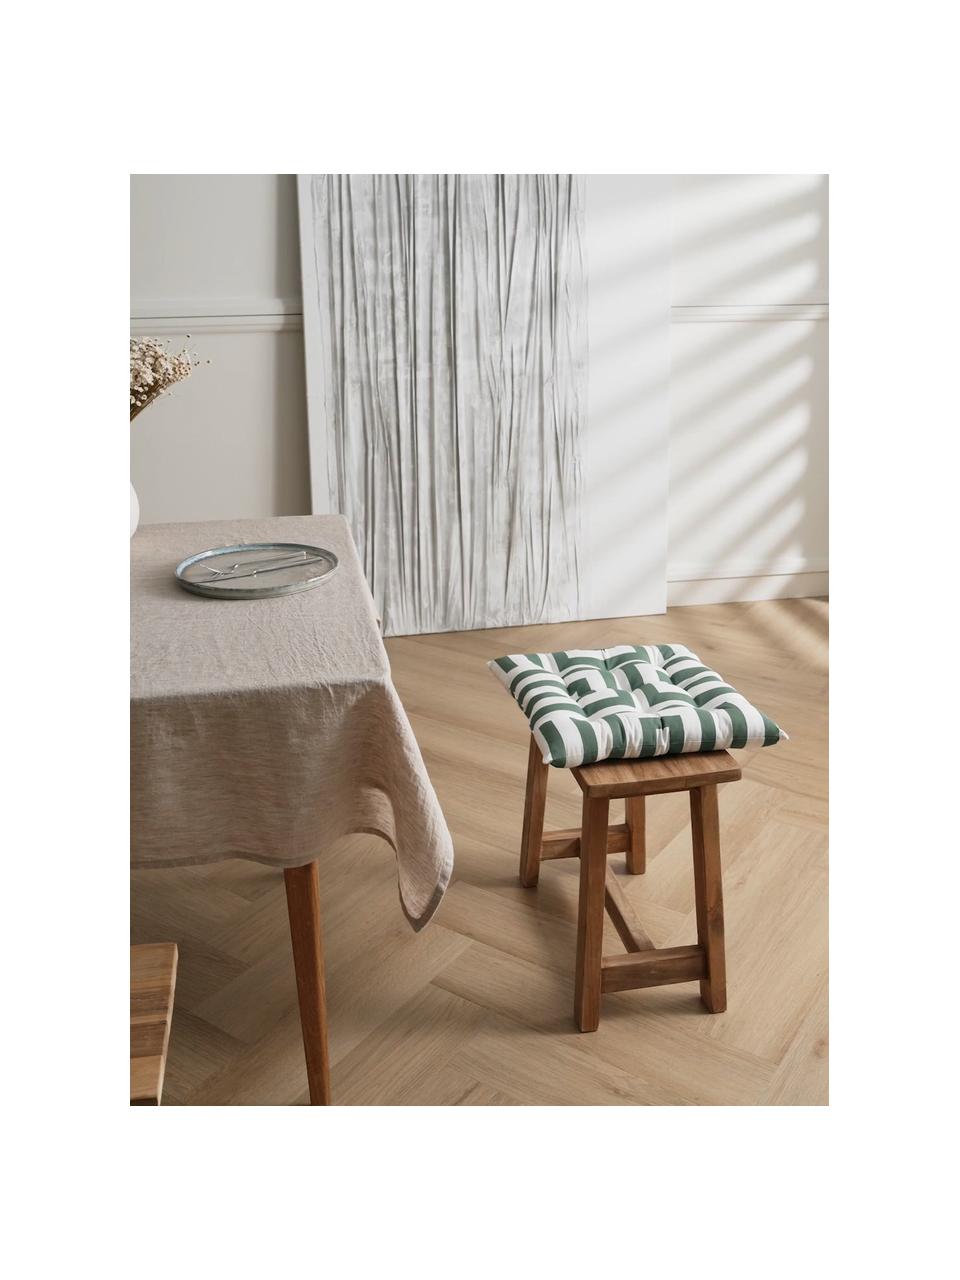 Baumwoll-Sitzkissen Bram mit grafischem Muster, Bezug: 100% Baumwolle, Dunkelgrün, Weiss, B 40 x L 40 cm